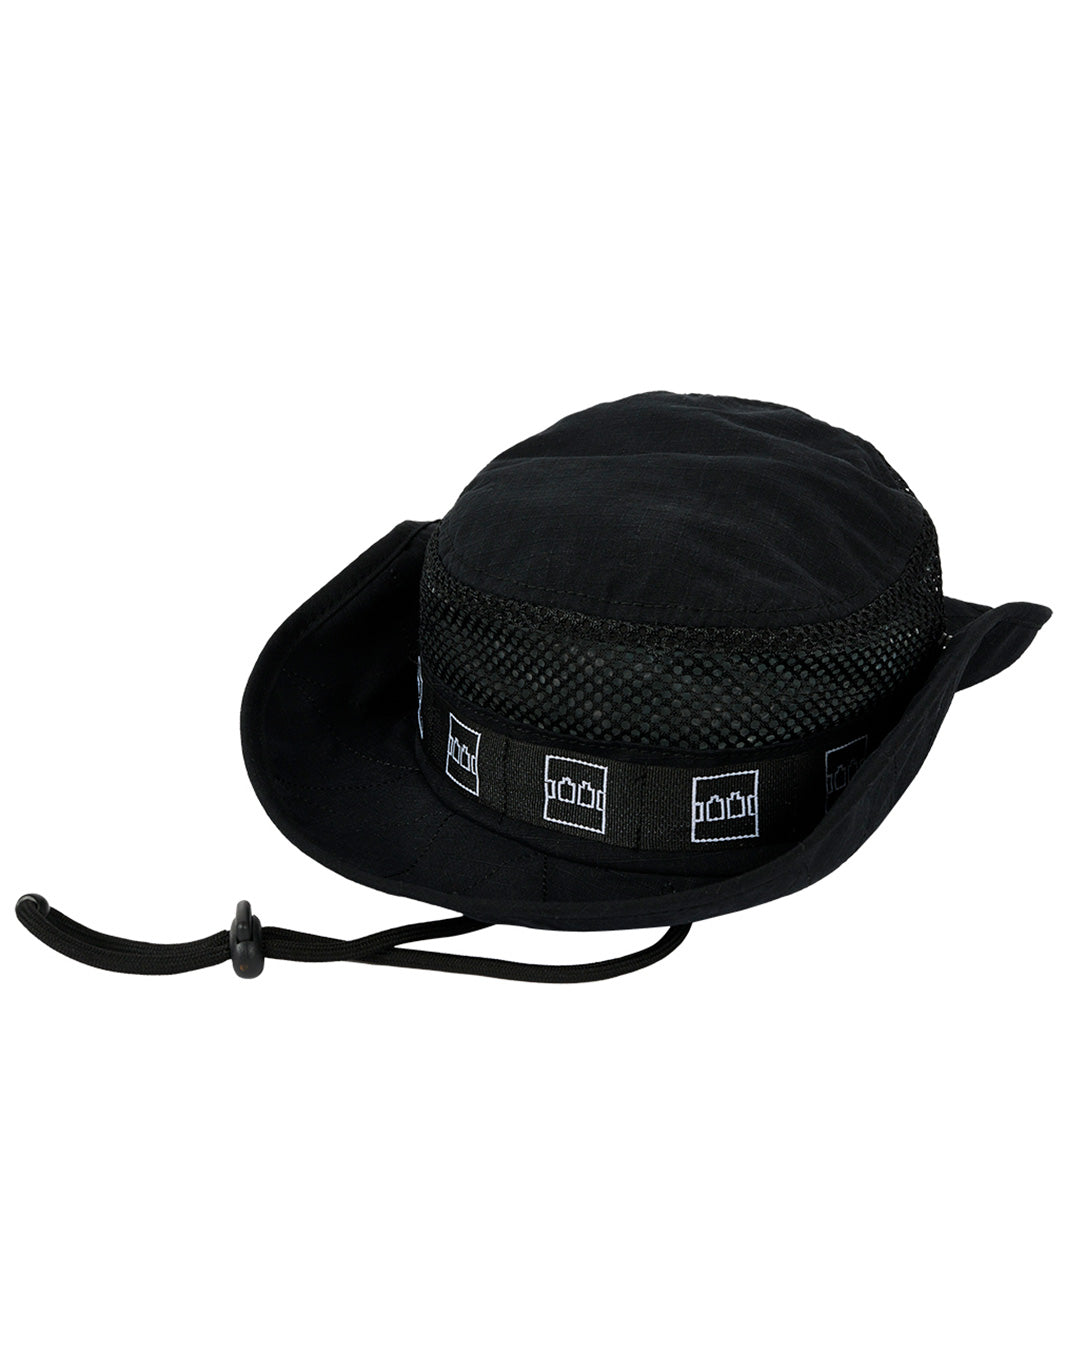 TTT Mesh Panel Bonnie Hat black